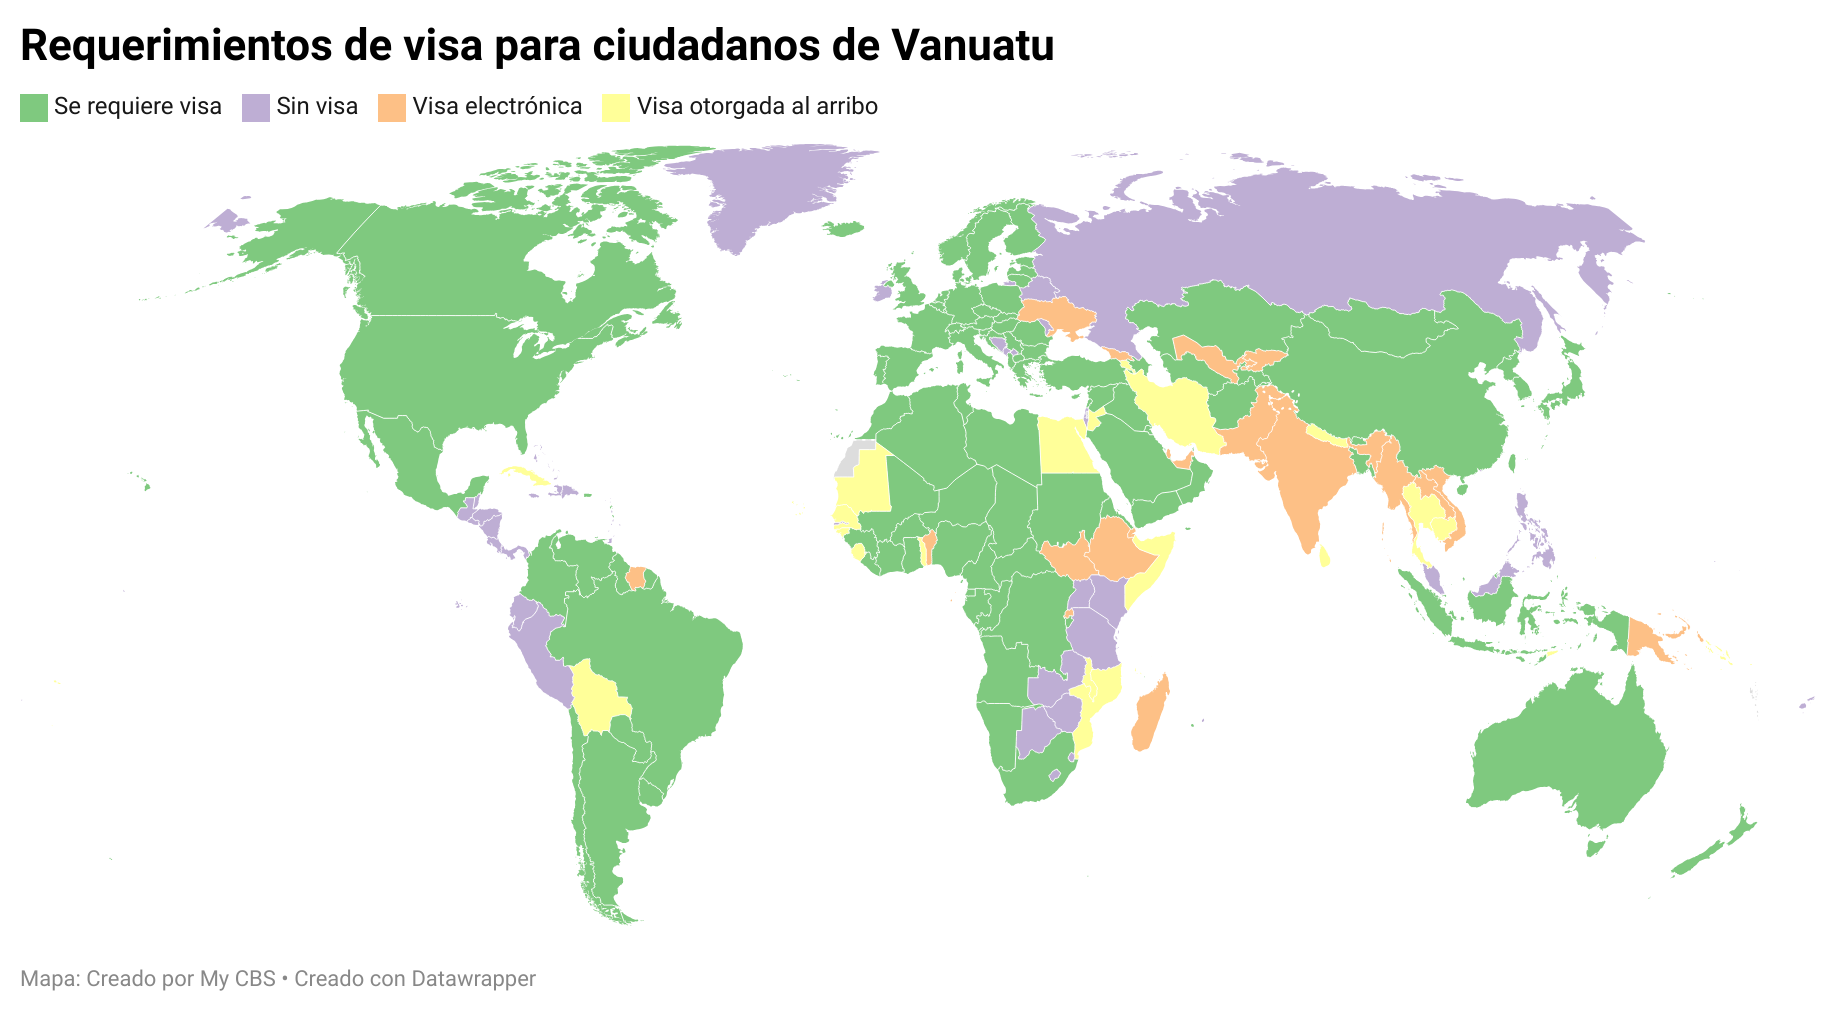 Mapa mundi mostrando los requerimientos de visa de cada uno para los ciudadanos de Vanautu